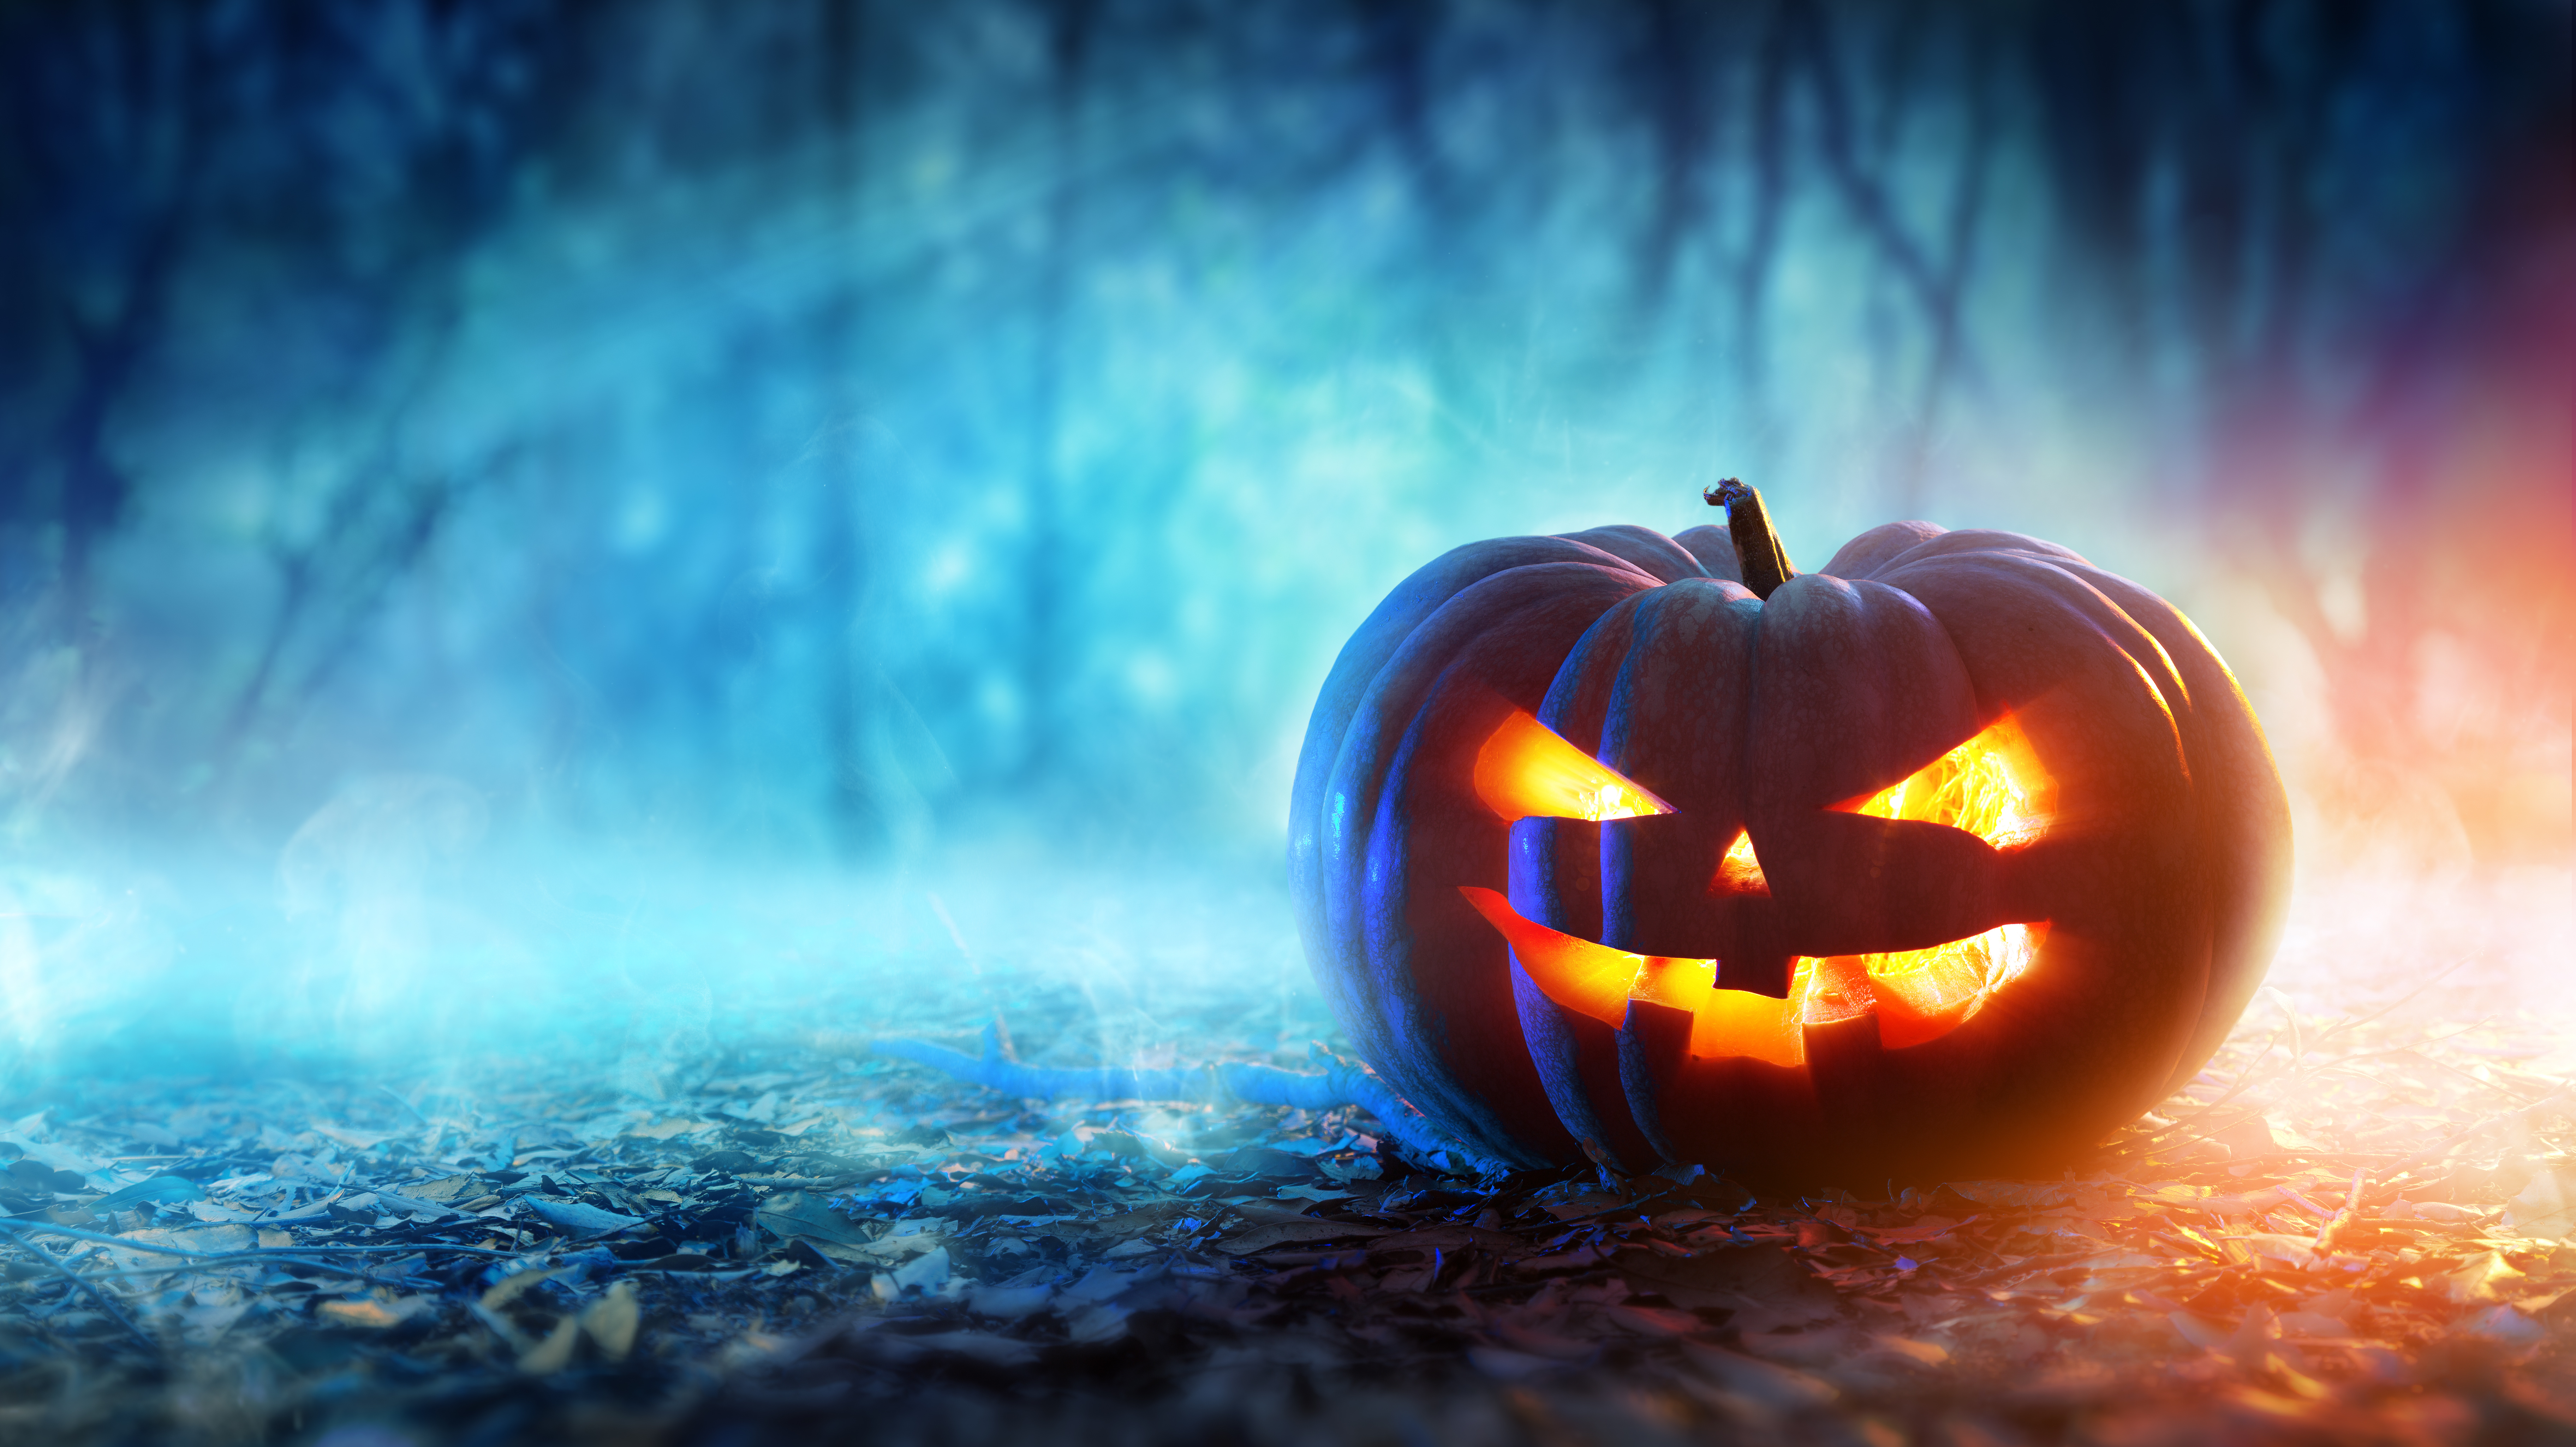 140+ 4K Halloween Fondos de pantalla | Fondos de Escritorio